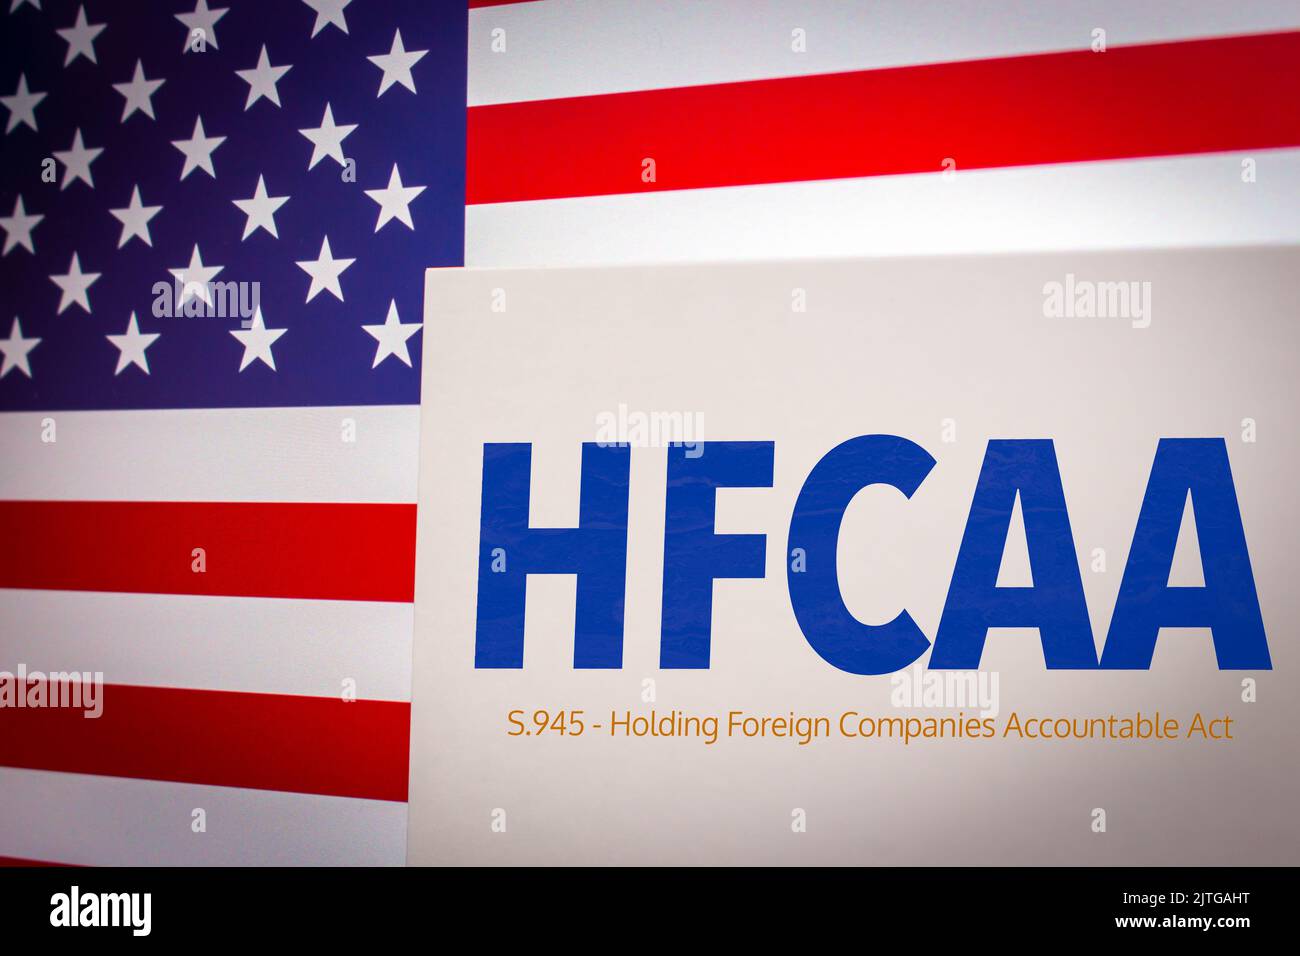 Mot-clé conceptuel HFCAA (Holding Foreign Companies Accountable Act) sur carte sur fond de drapeau américain. Entreprises chinoises aux États-Unis concept Banque D'Images